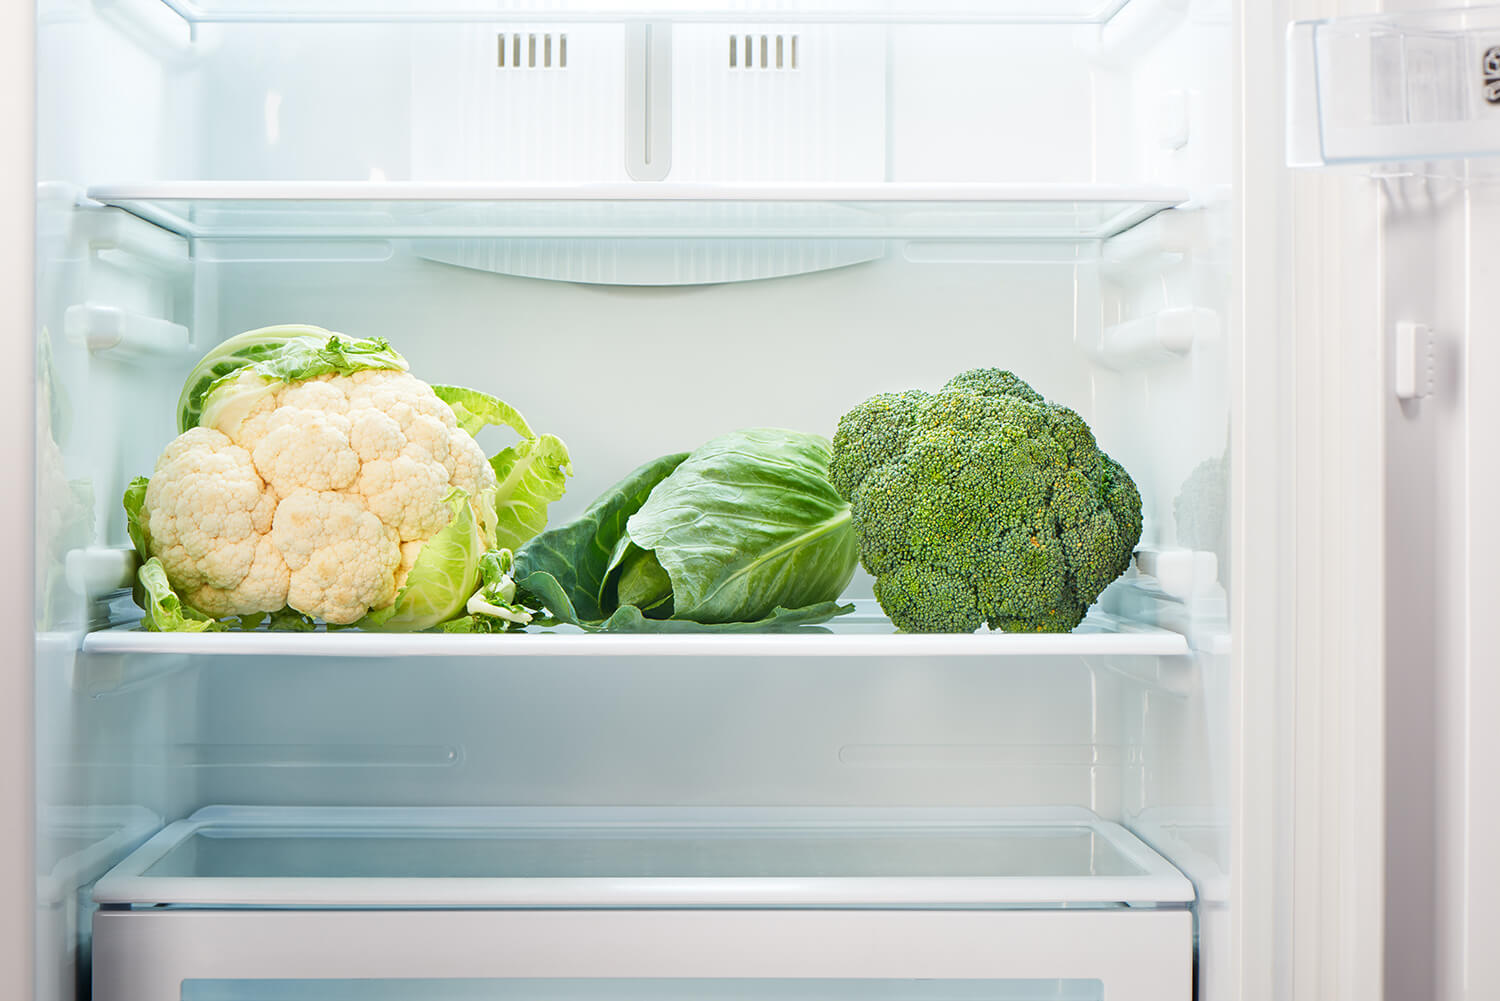 Blumenkohl und weiteres grünes Gemüse liegen im geöffneten Kühlschrank